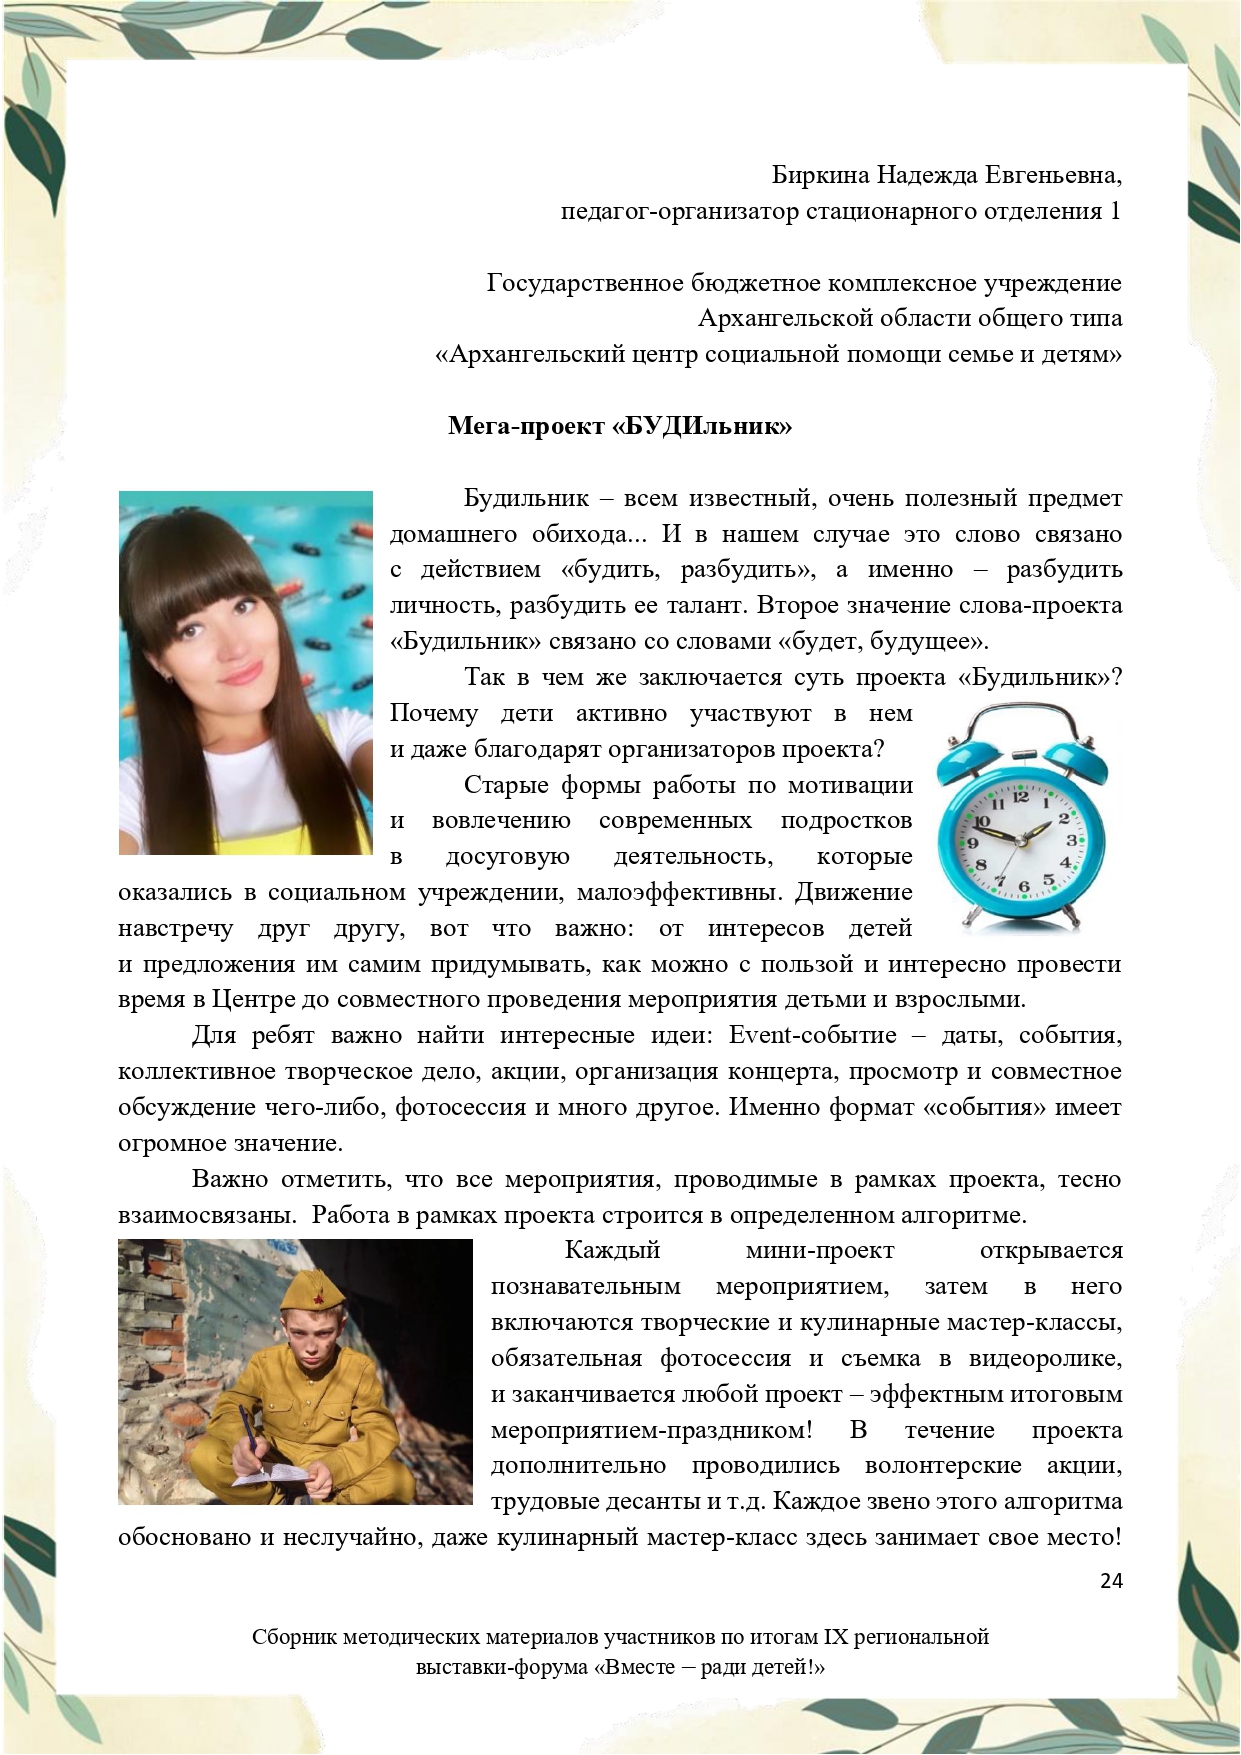 Sbornik_metodicheskikh_materialov_uchastnikov_IX_regionalnoy_vystavki-foruma_Vmeste__radi_detey_33__2023_page-0024